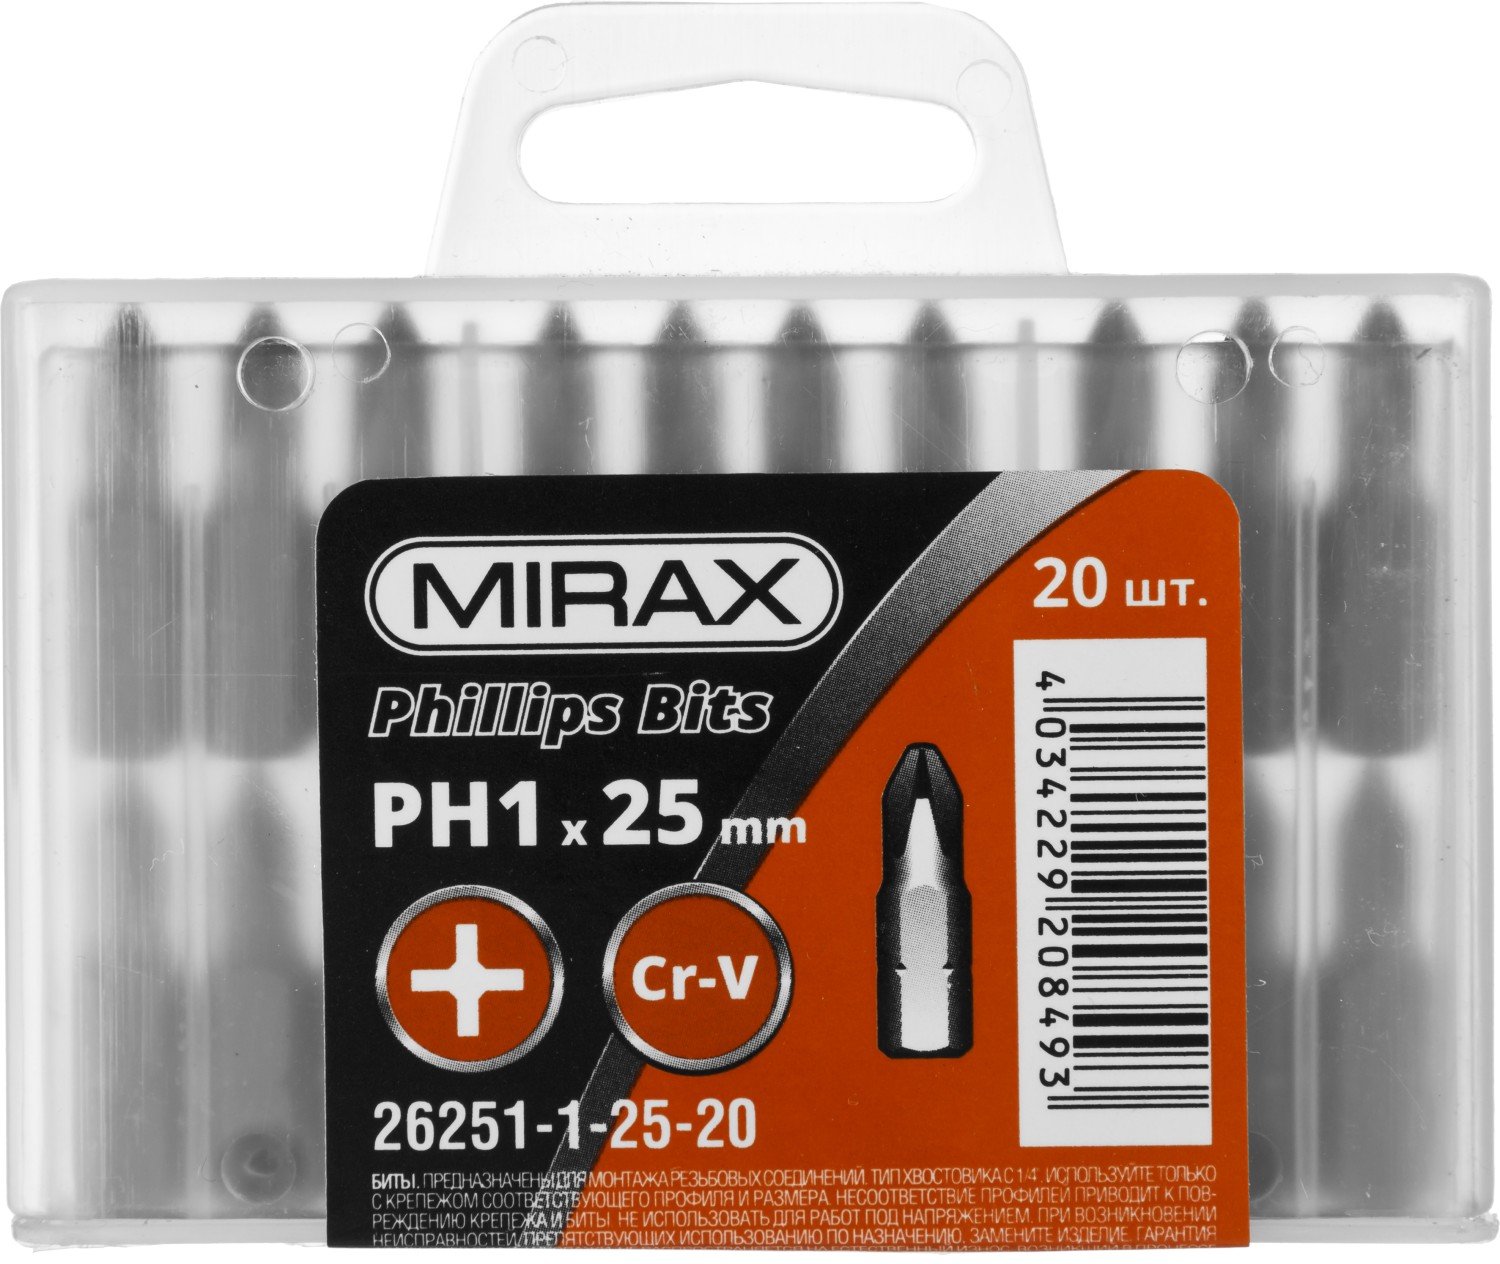   MIRAX PH1 25  20 . (26251-1-25-20)